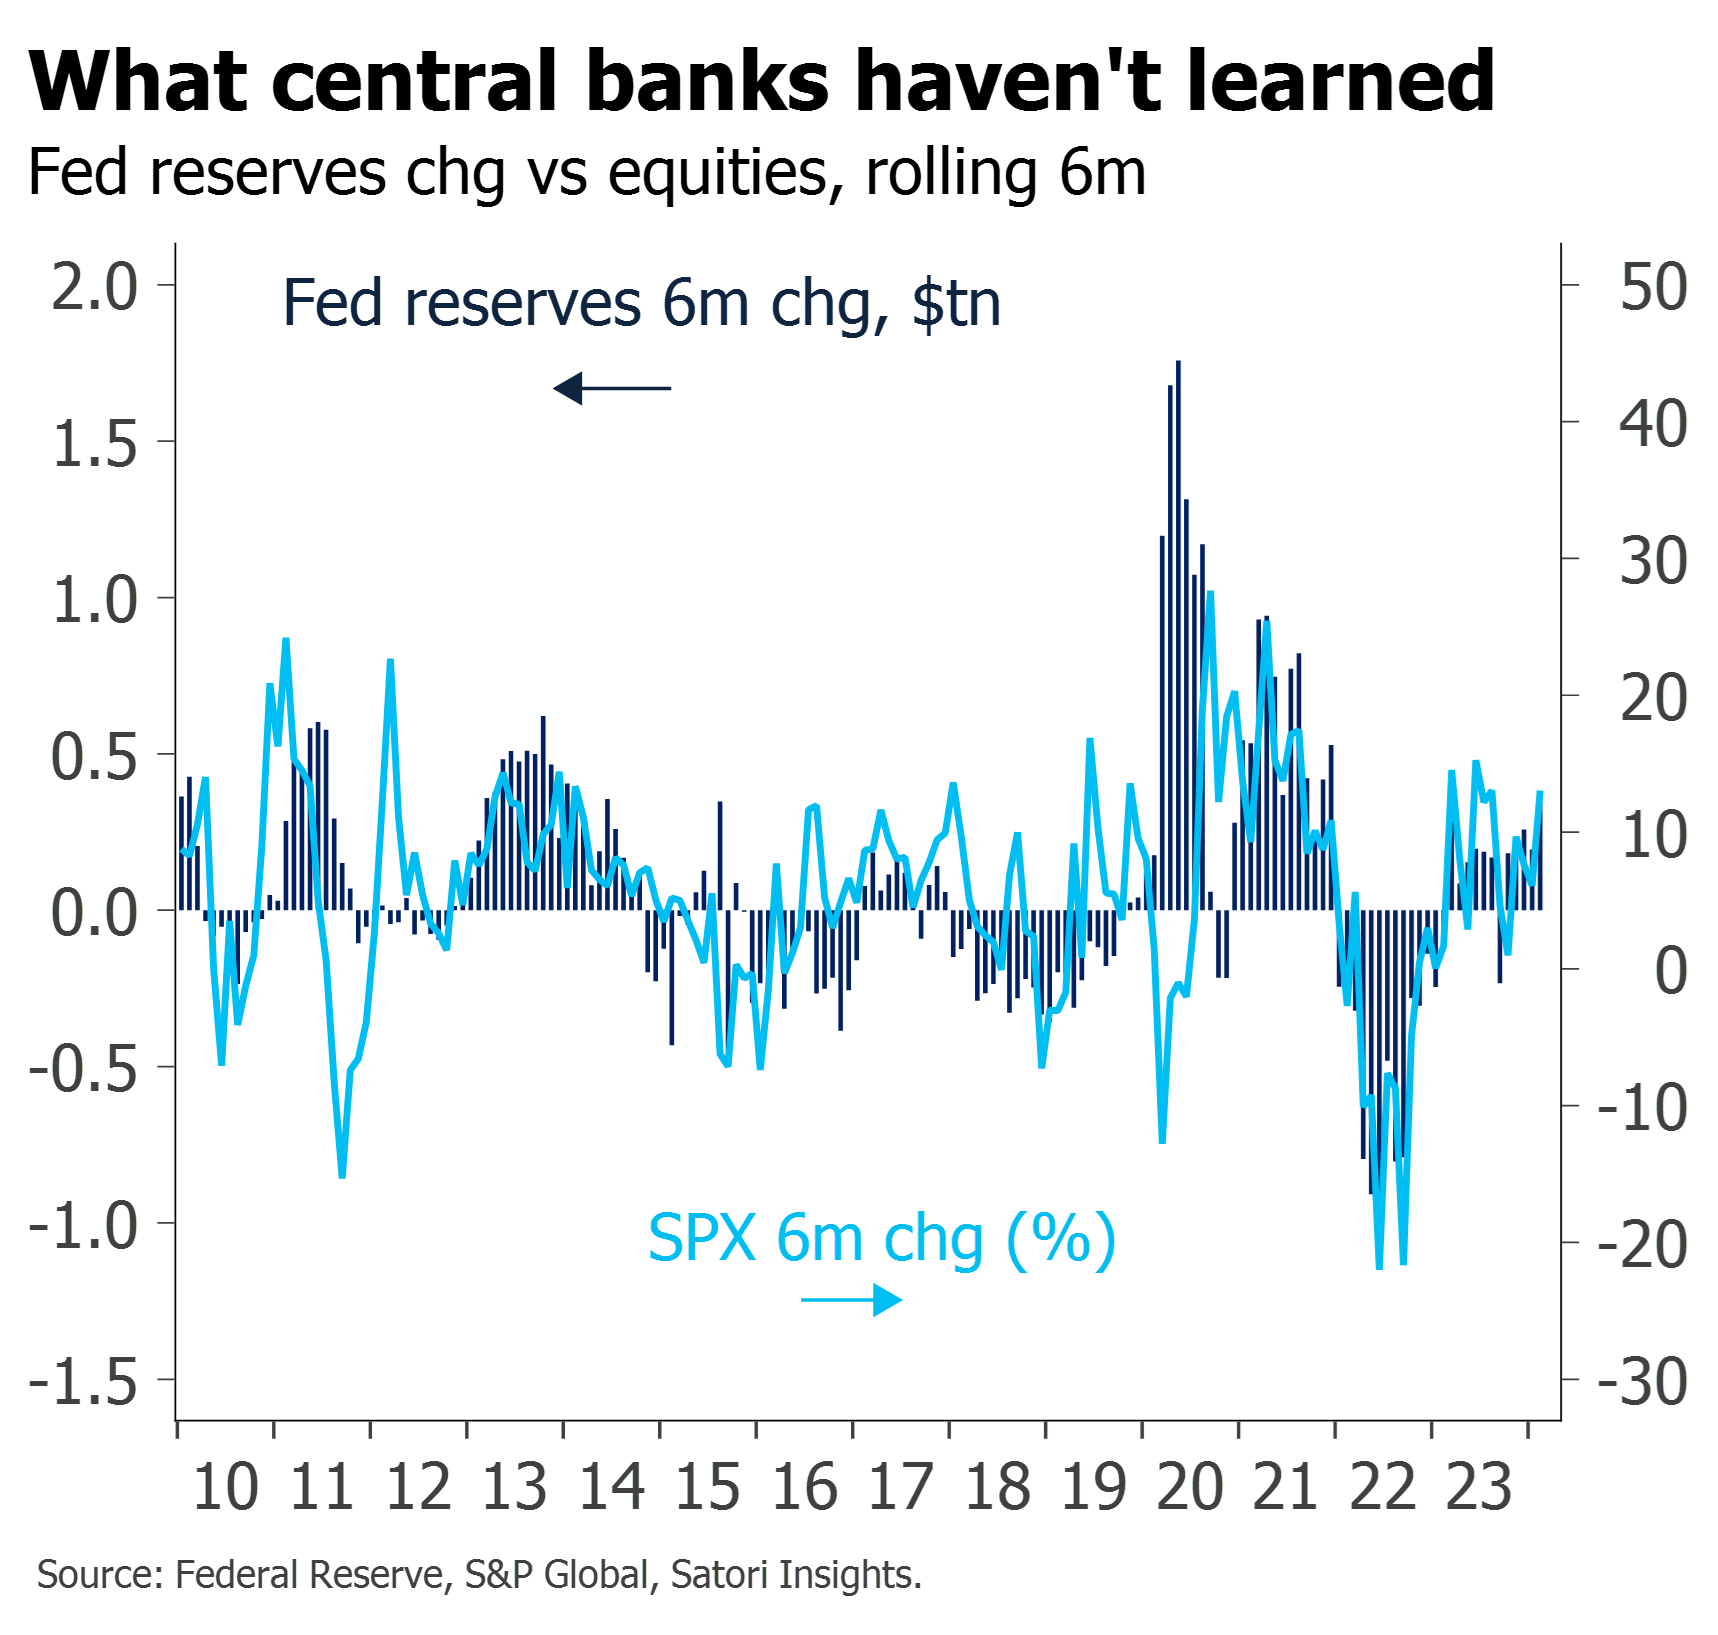 fed reserves vs equities 6m chg